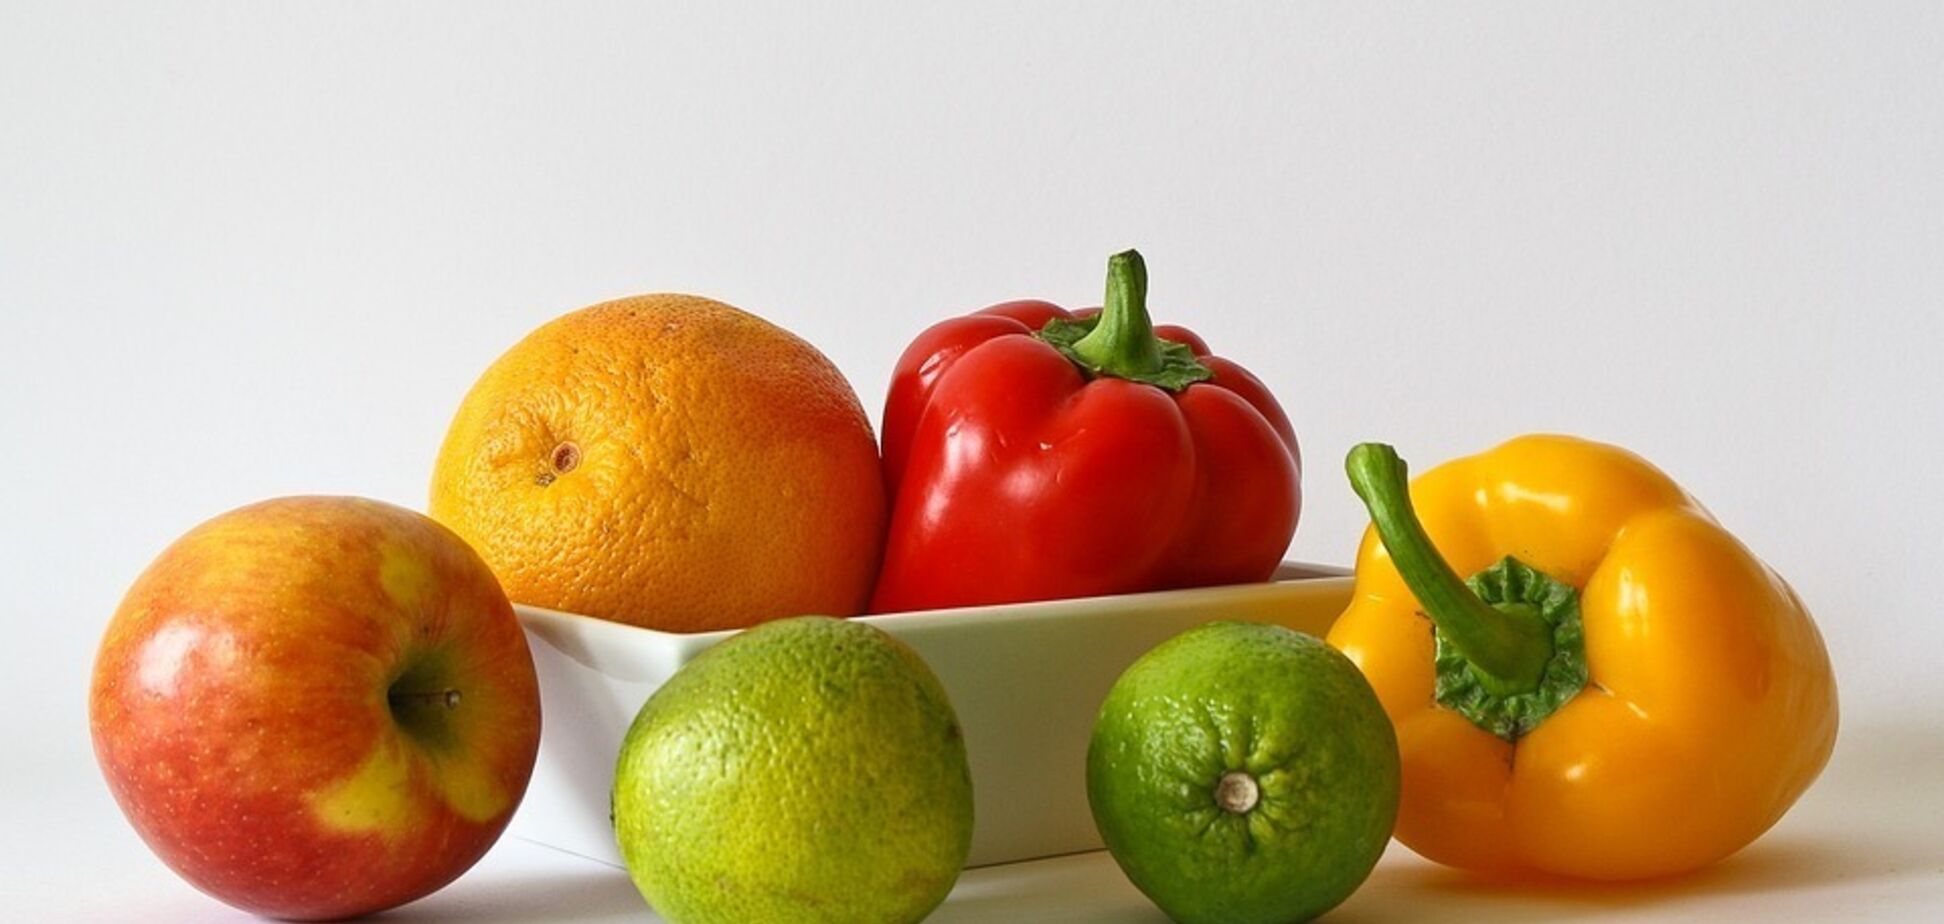 Как нельзя хранить овощи, фрукты и ягоды: они быстро испортятся